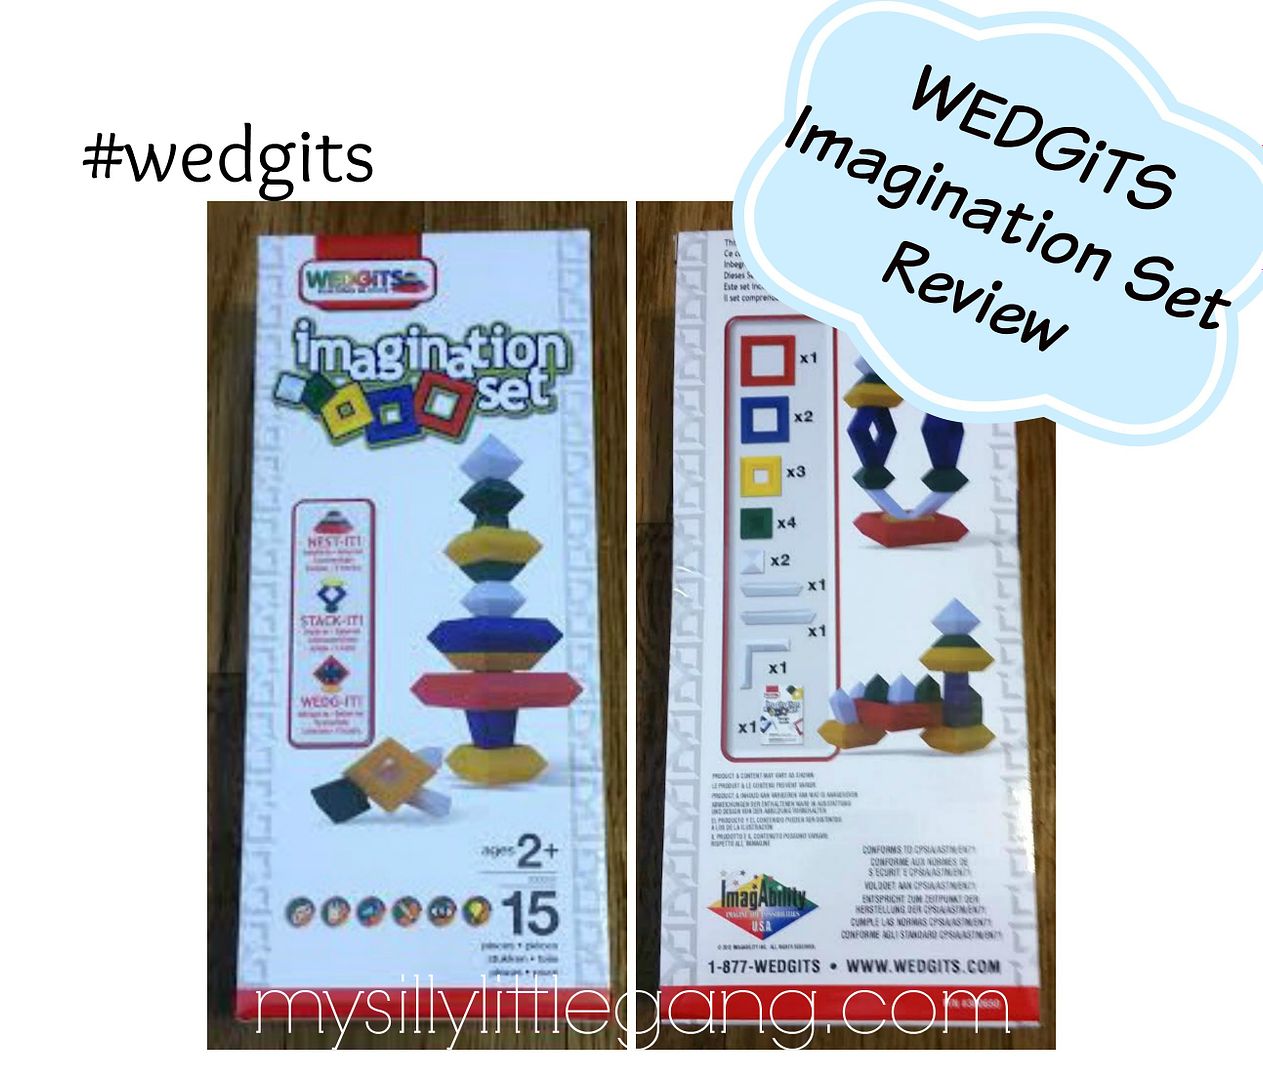 wedgits-imagination-set